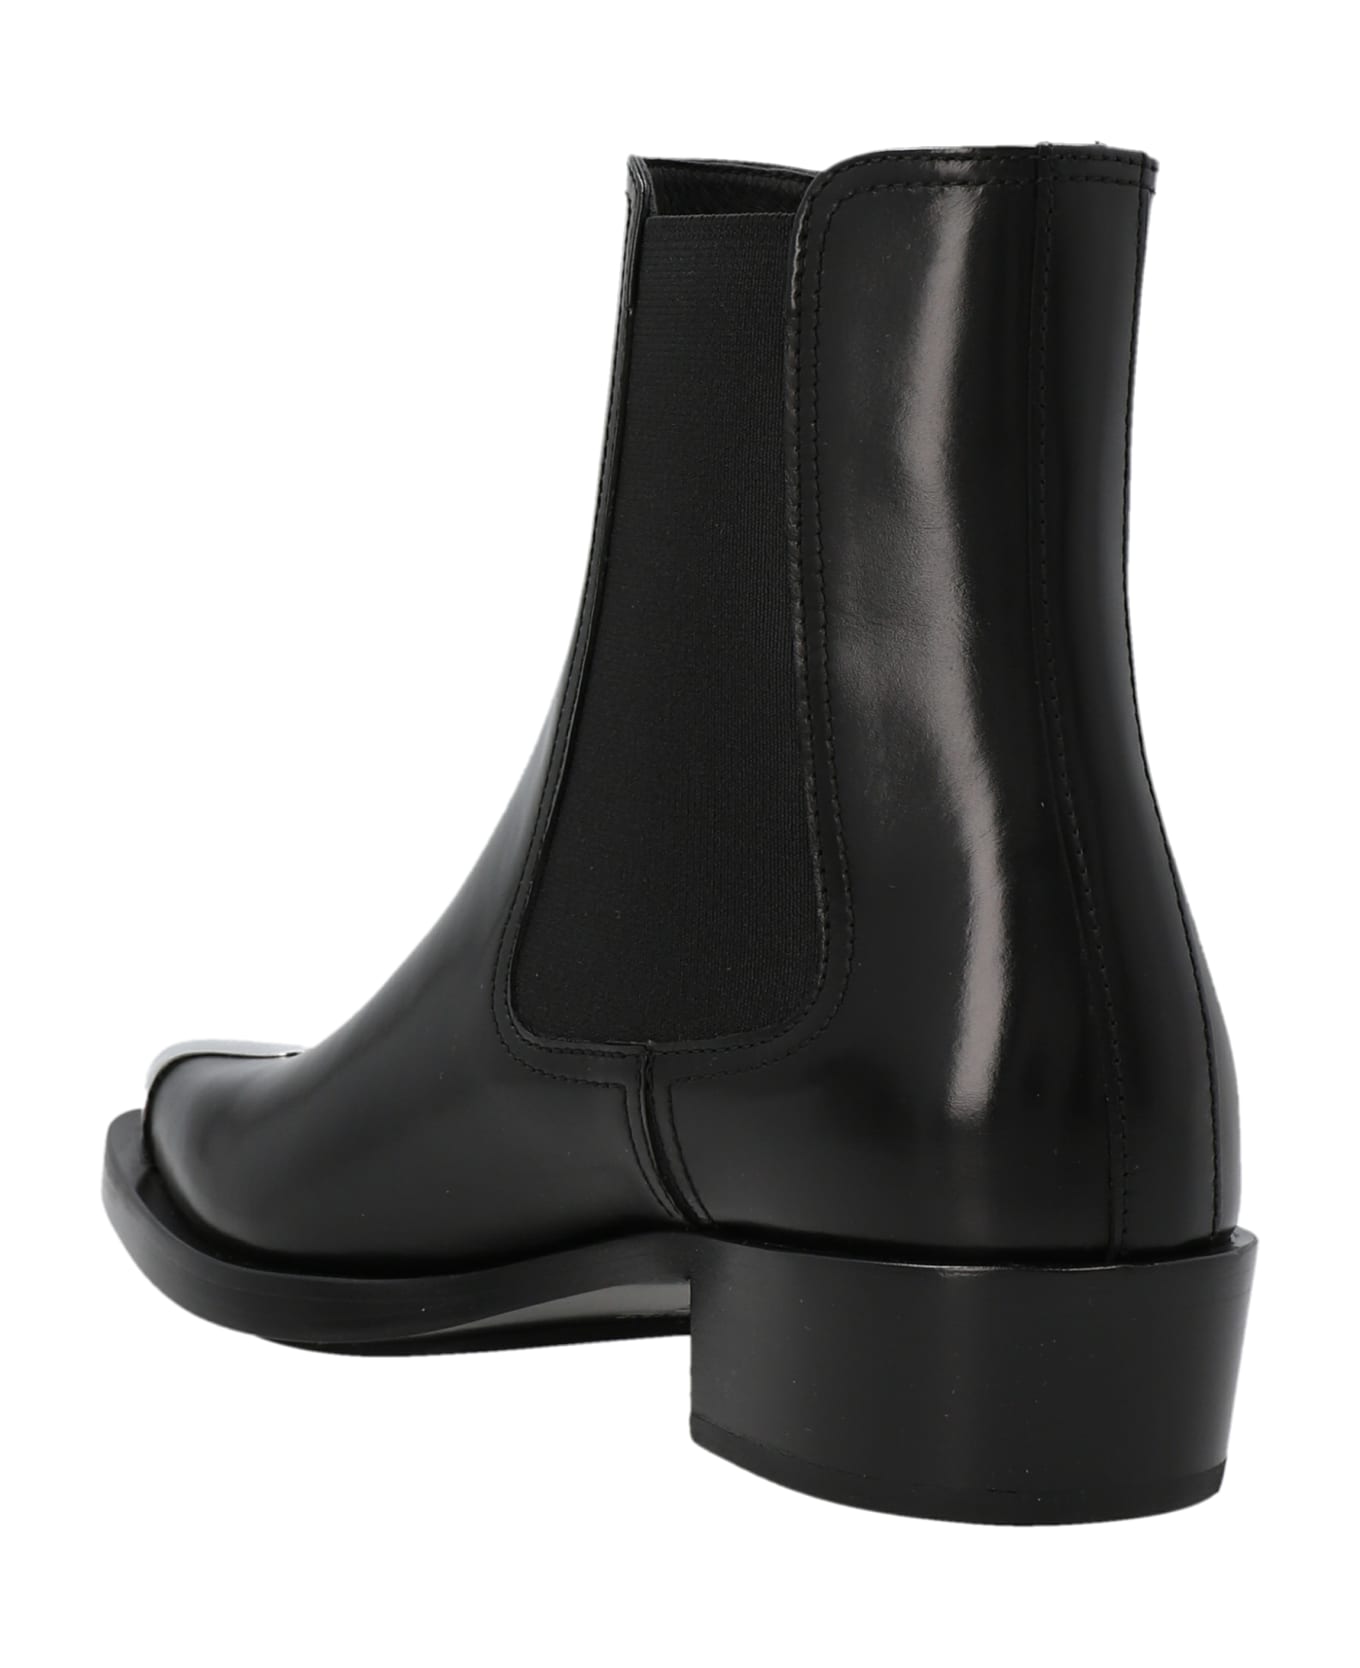 Alexander McQueen Metallic Toe Ankle Boots - Nero